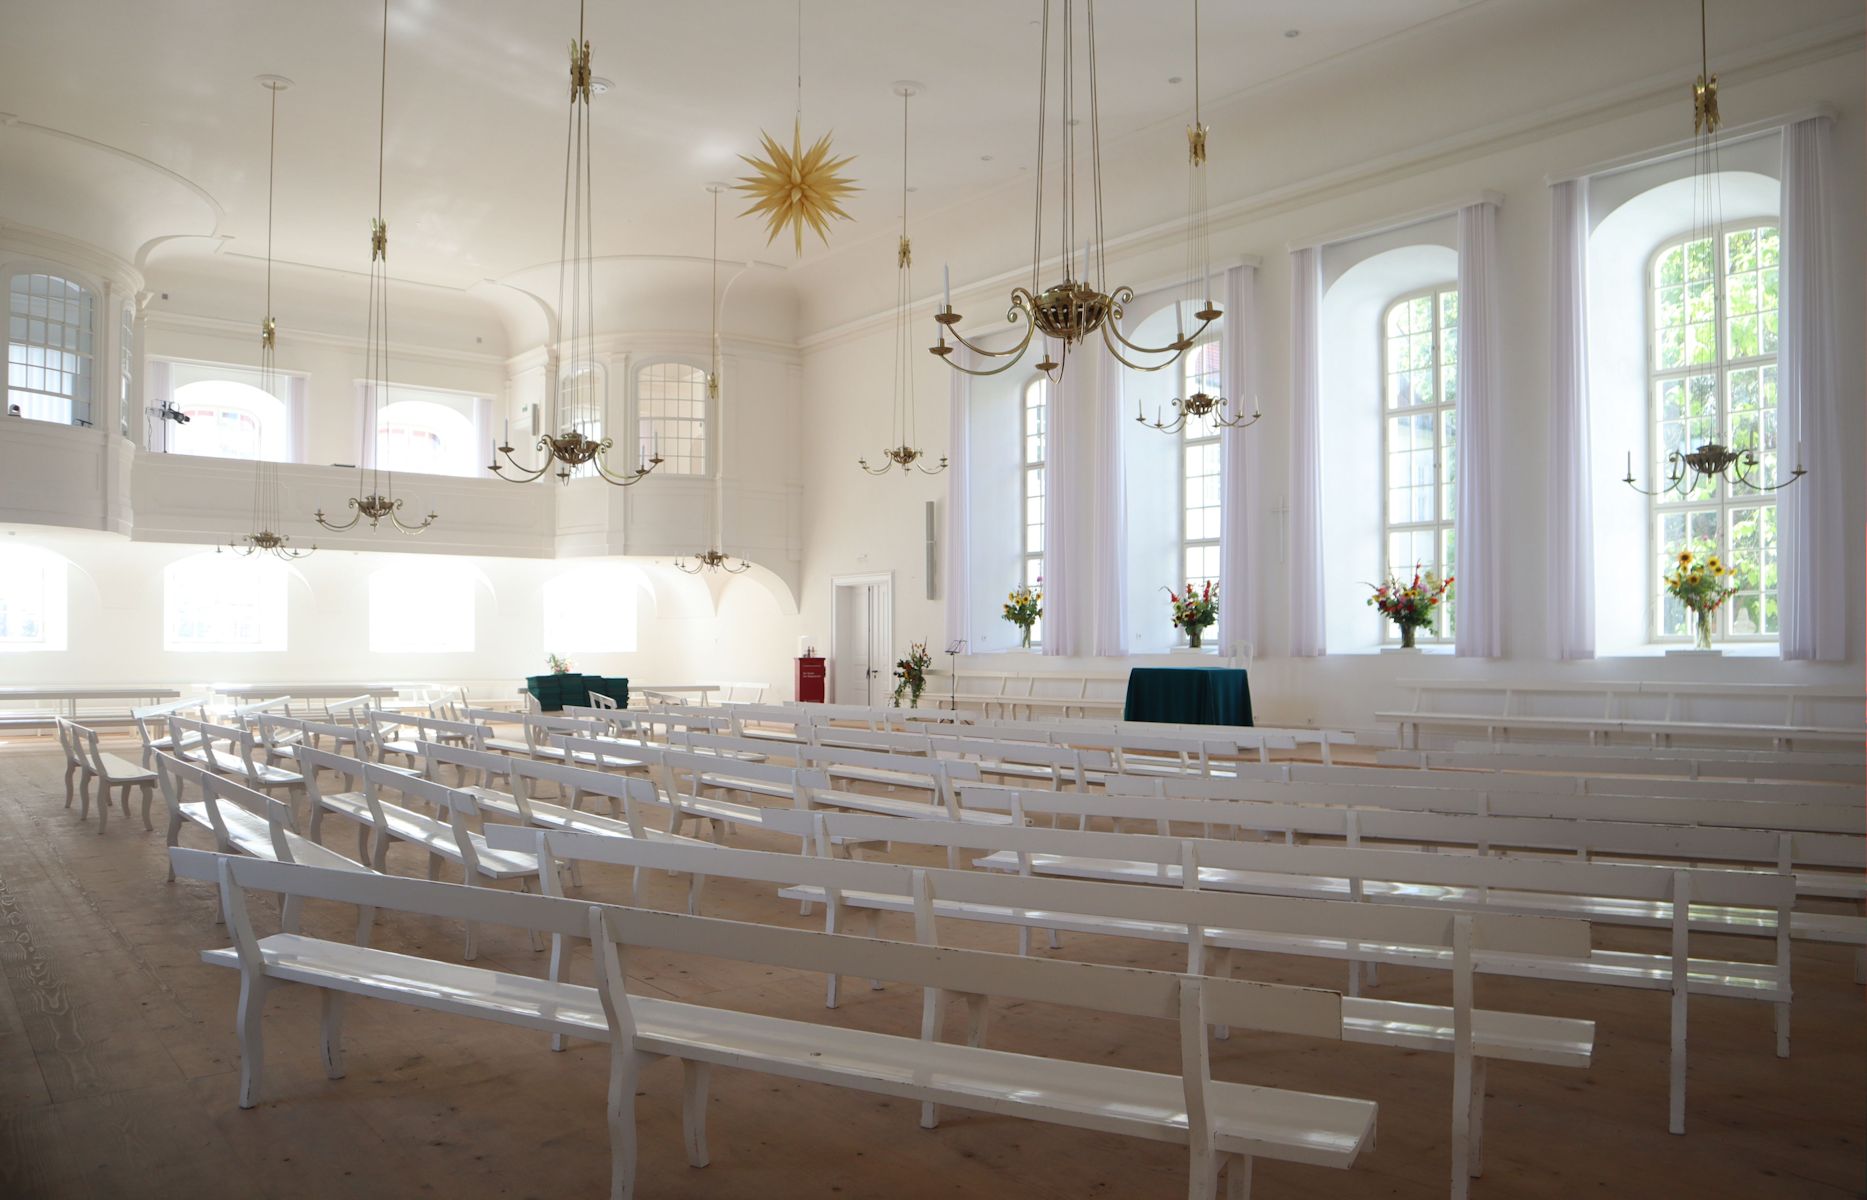 Kirchensaal der Herrnhuter Brüdergemeine in Herrnhut, erbaut 1756